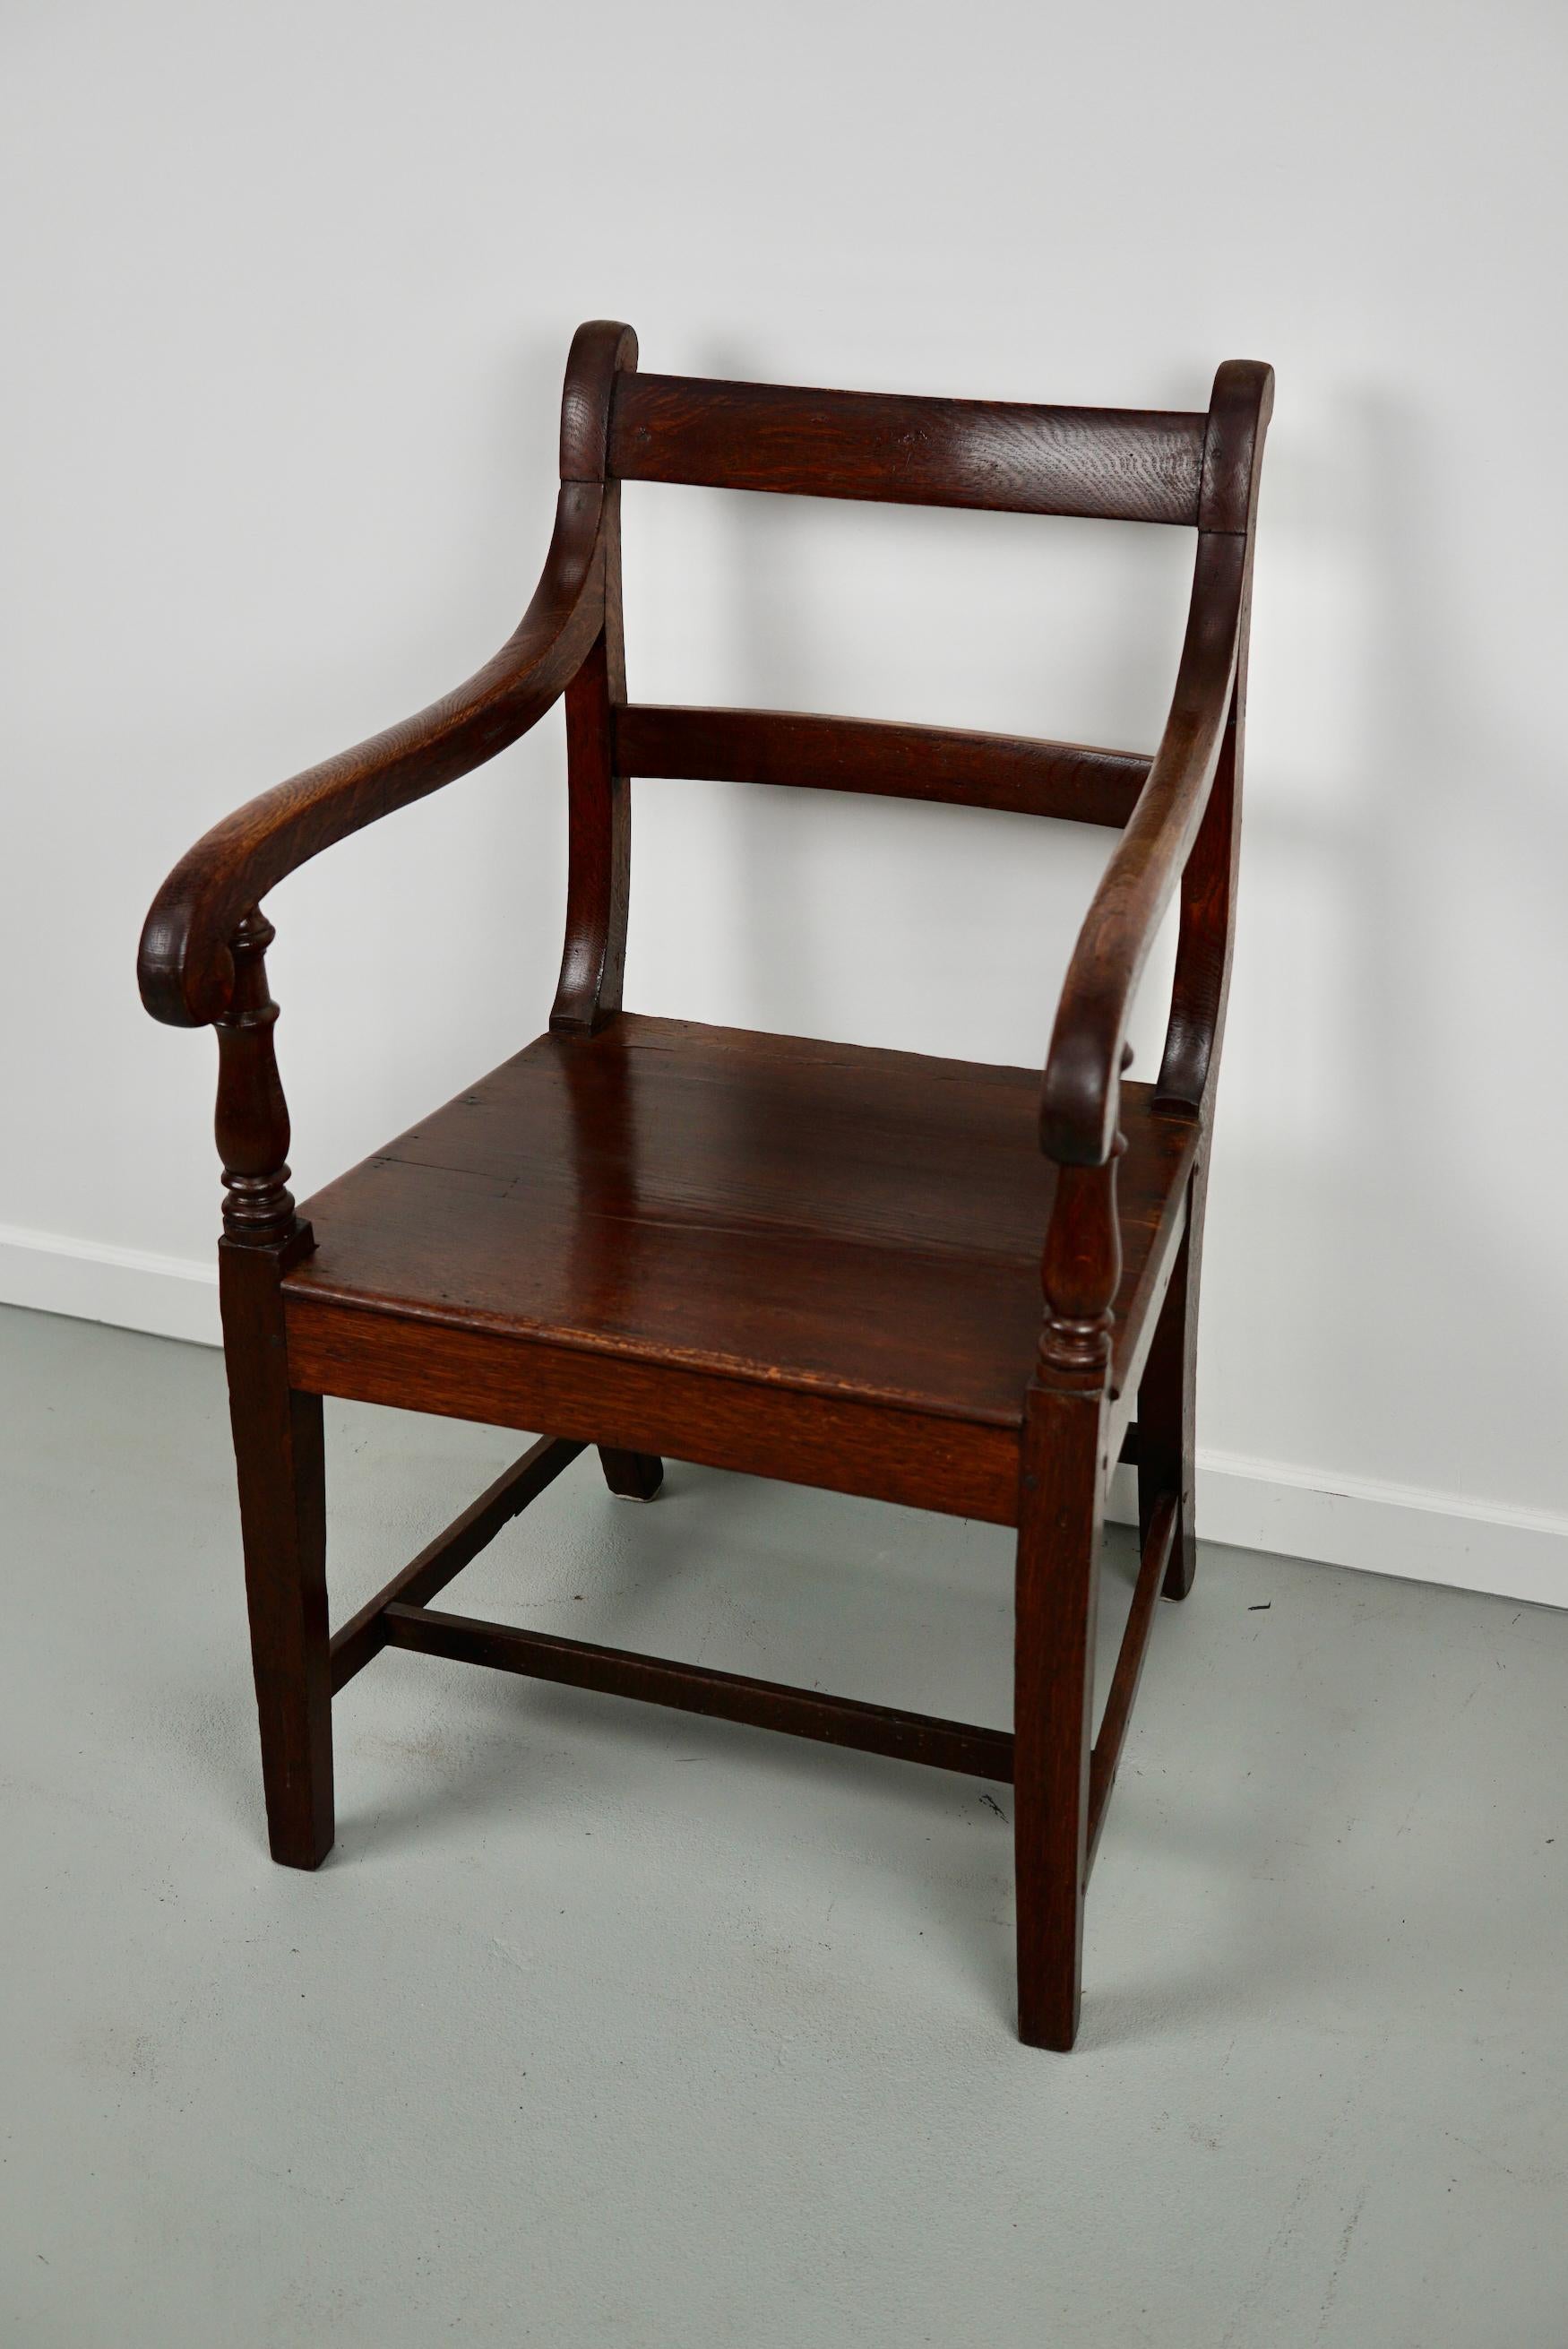 Ce fauteuil a été fabriqué au 18e siècle en Angleterre. Il reste en très bon état avec une belle couleur chaude et une patine.